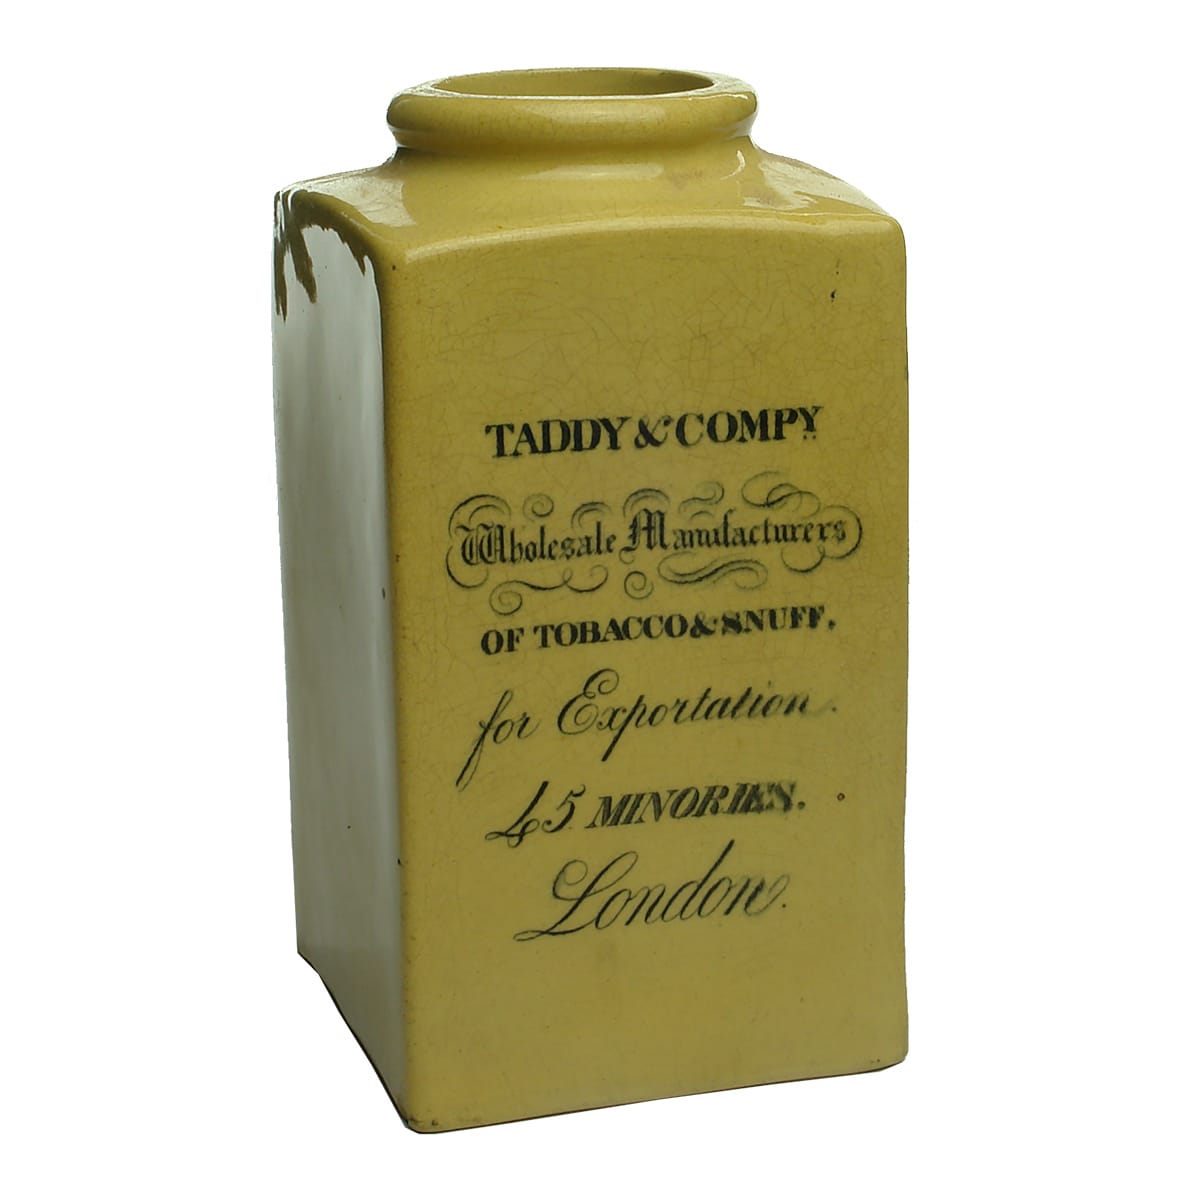 Tobacciana. Taddy & Compy Tobacco & Snuff, London. Square ceramic jar.